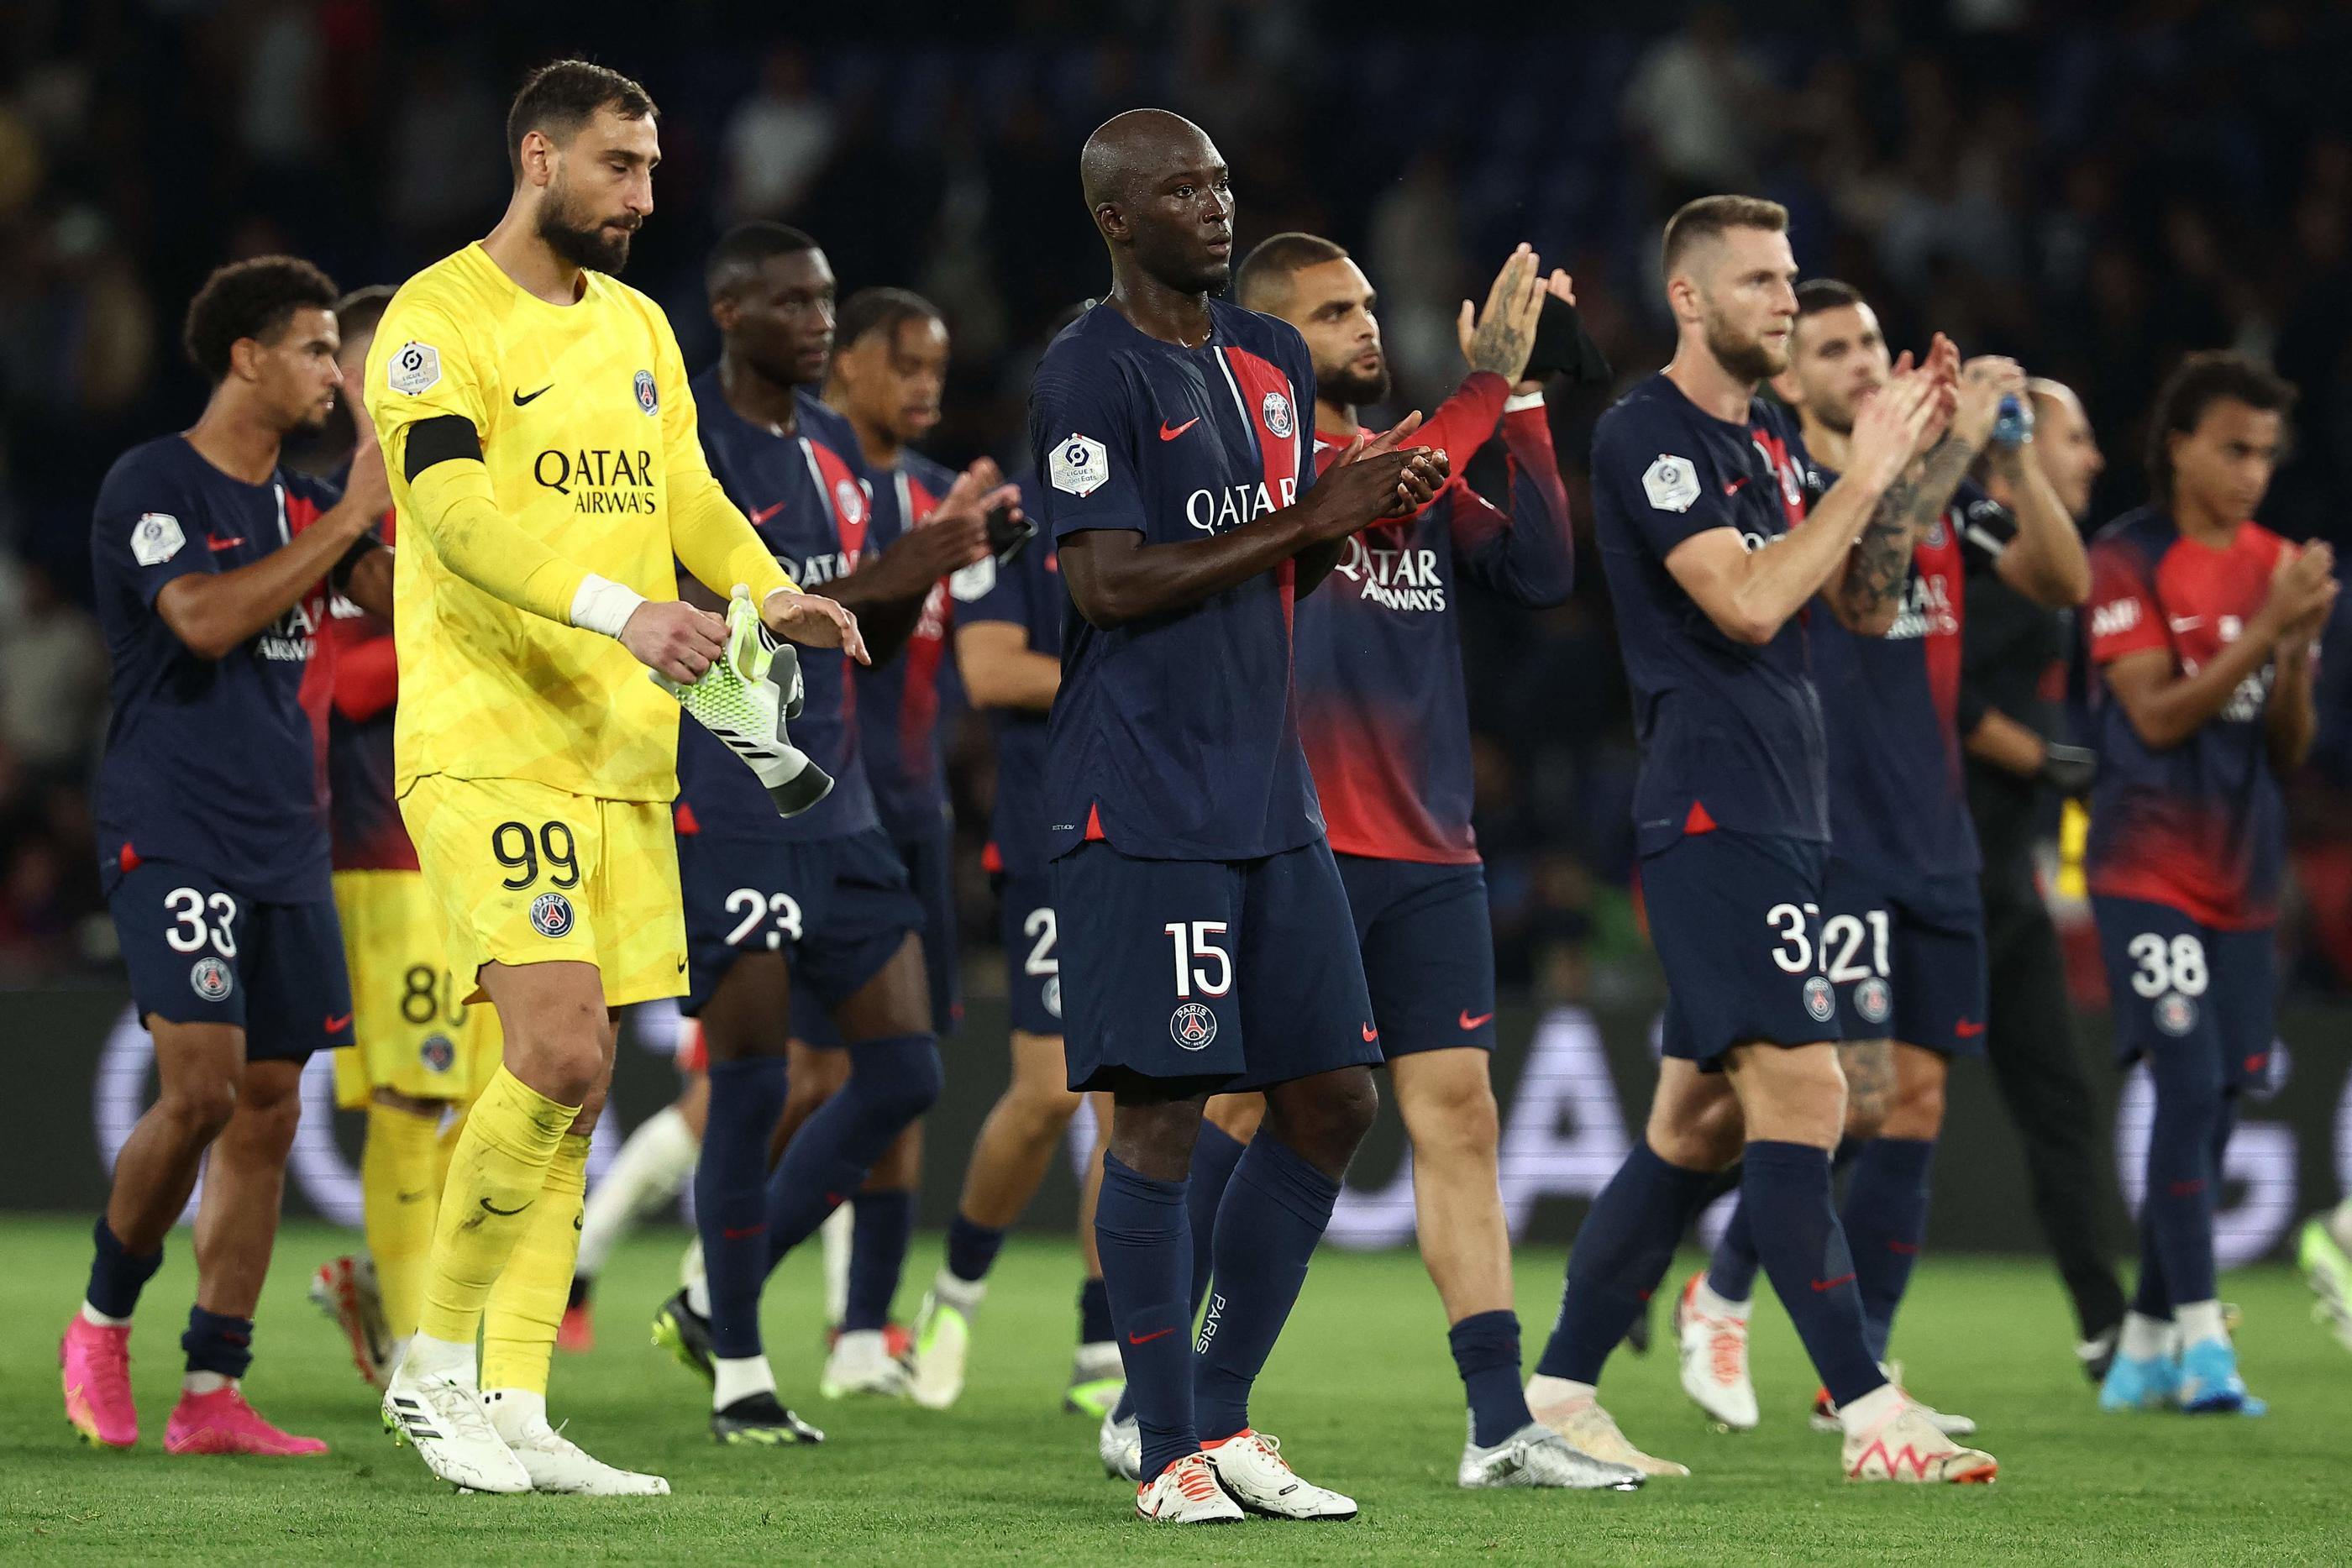 Après la défaite contre Nice, les Parisiens retrouveront leurs supporters dès ce mardi en Ligue des champions en espérant proposer une meilleure performance. AFP/Franck Fife